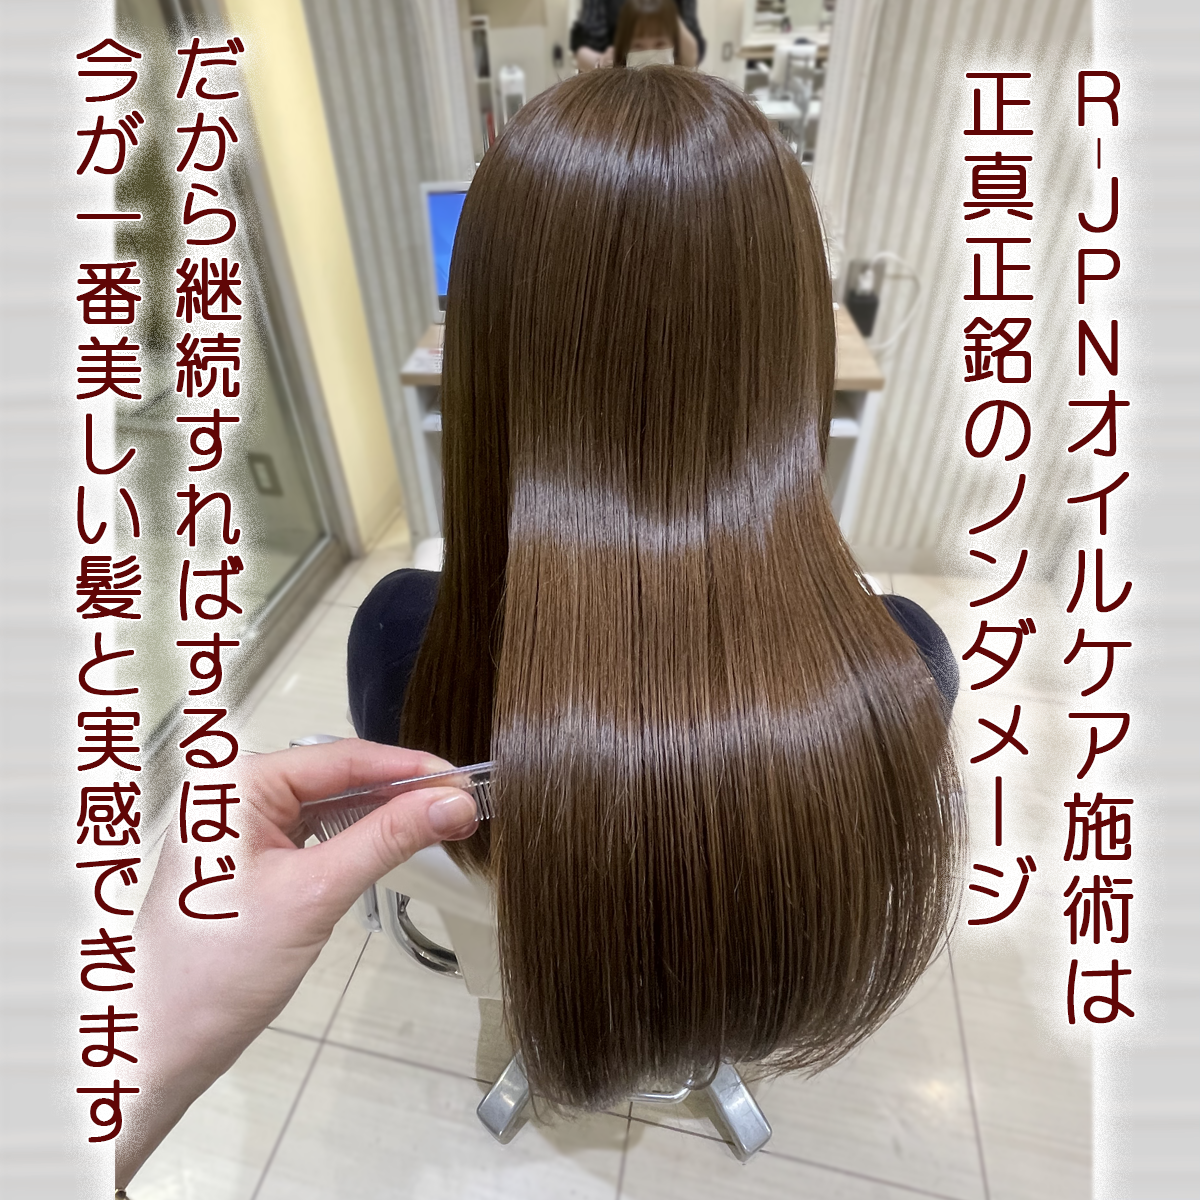 ホーム(new) - ナノオイル髪質改善美容室GINZA CIRO＆ HANAKO美容室